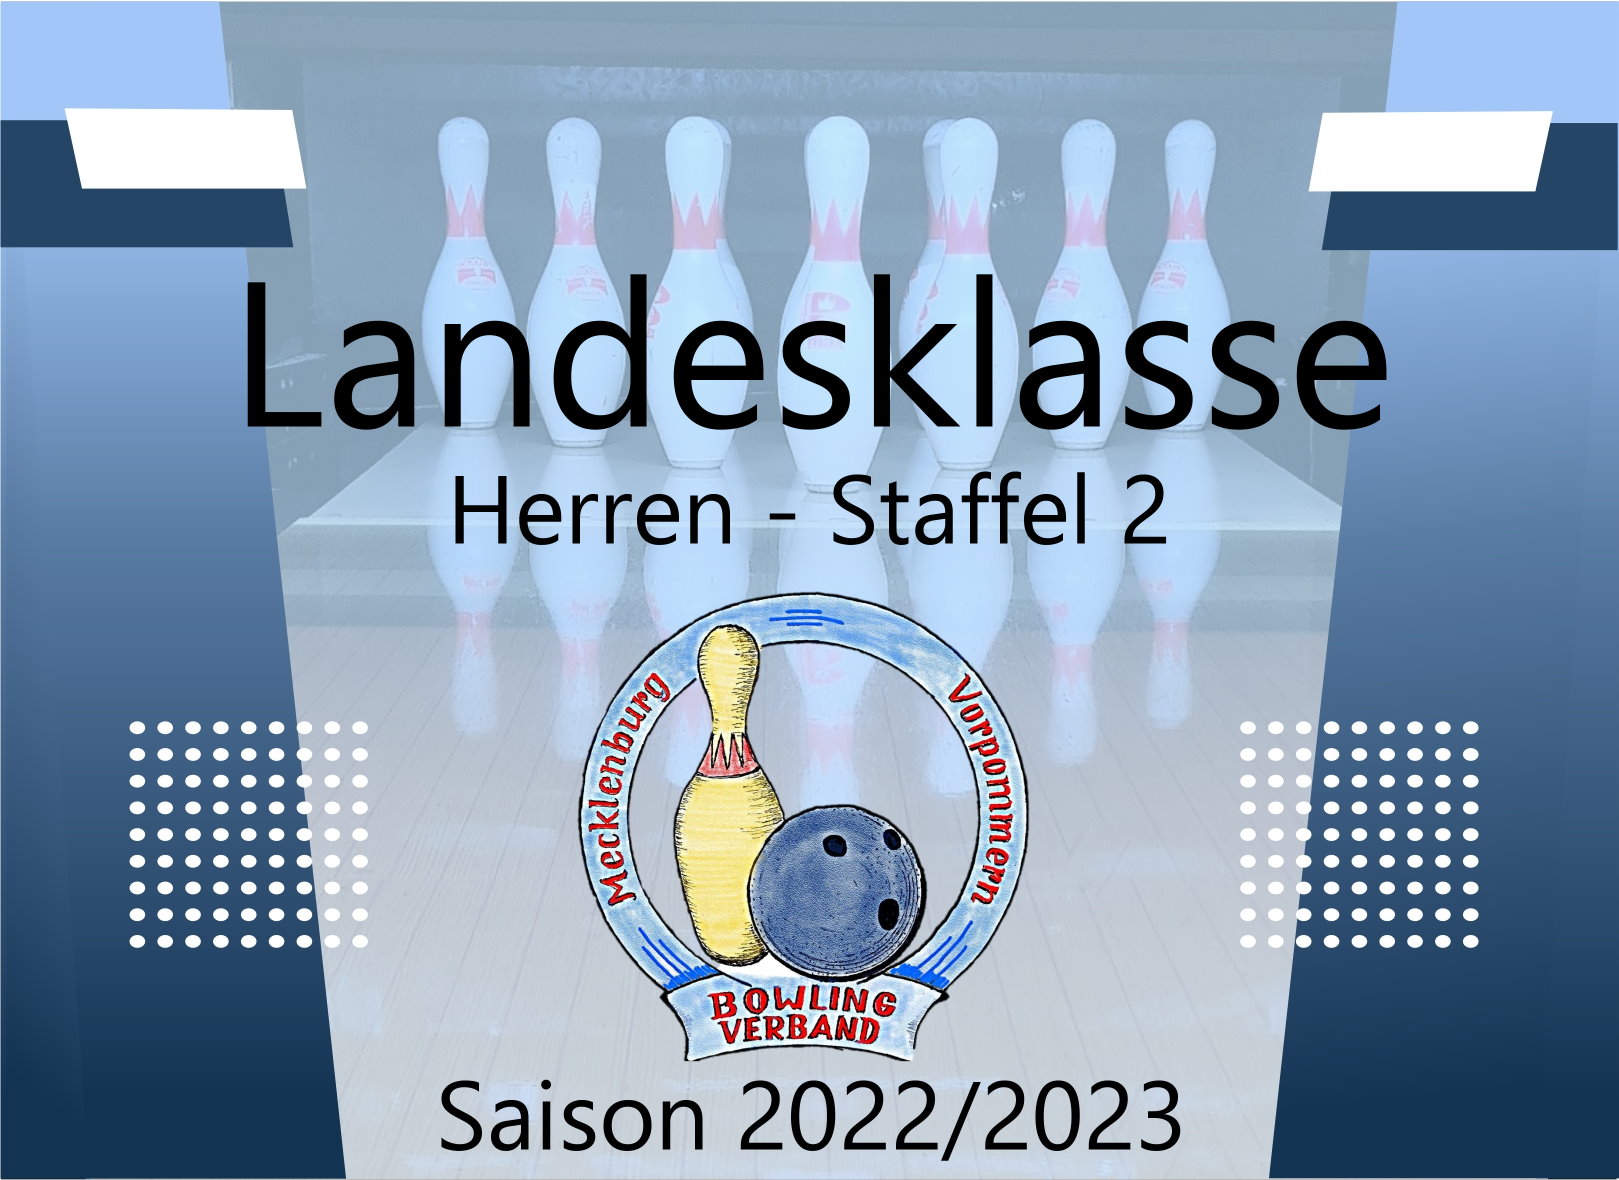 Landesklasse Herren Staffel 2 - 4. Spieltag